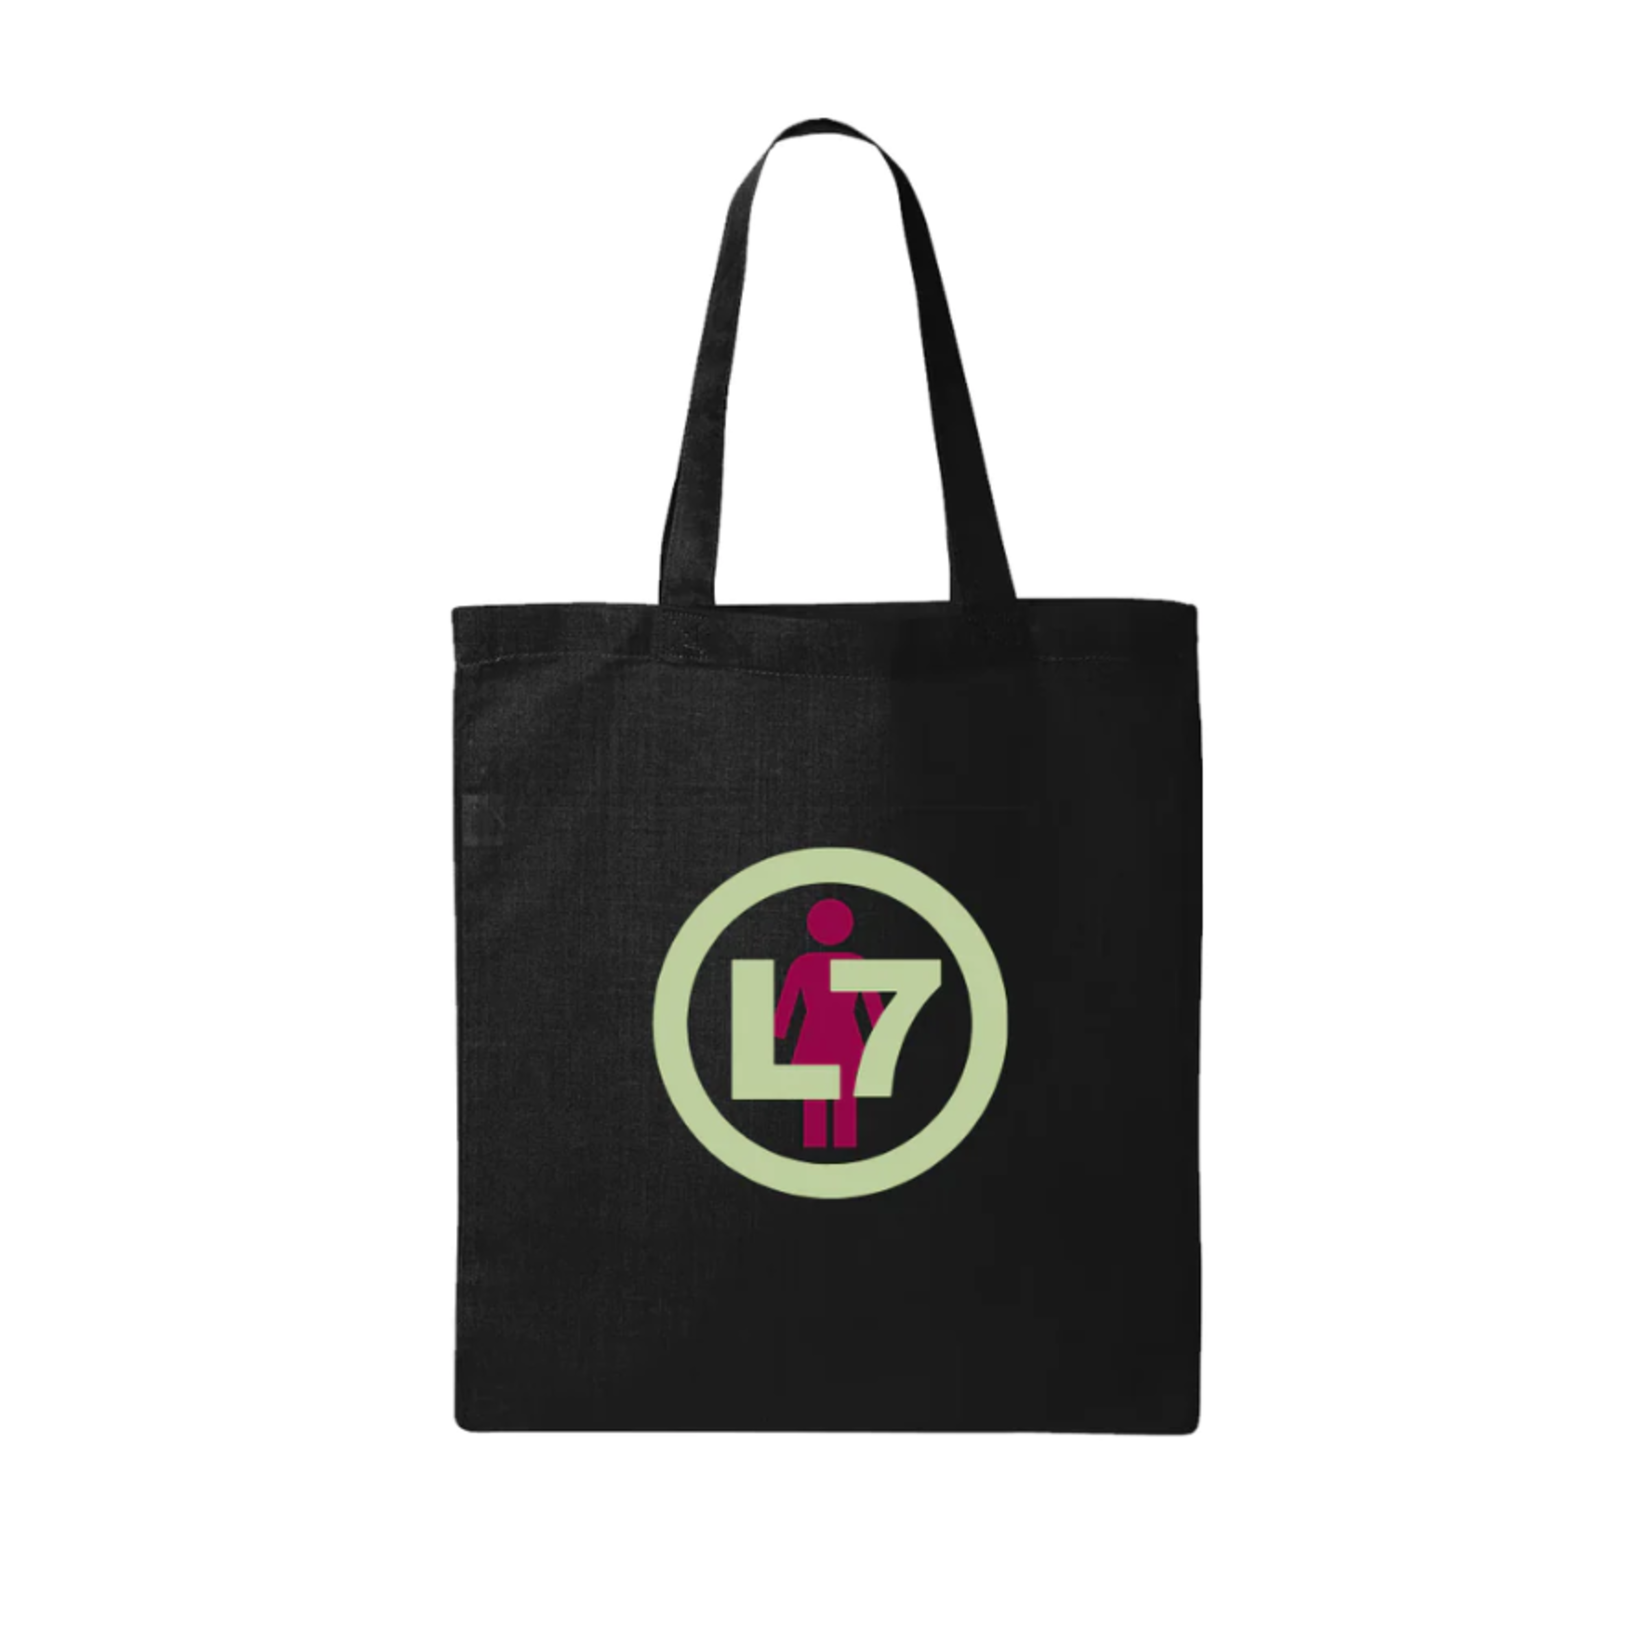 Girl Girl L7 Logo Tote Bag - Black